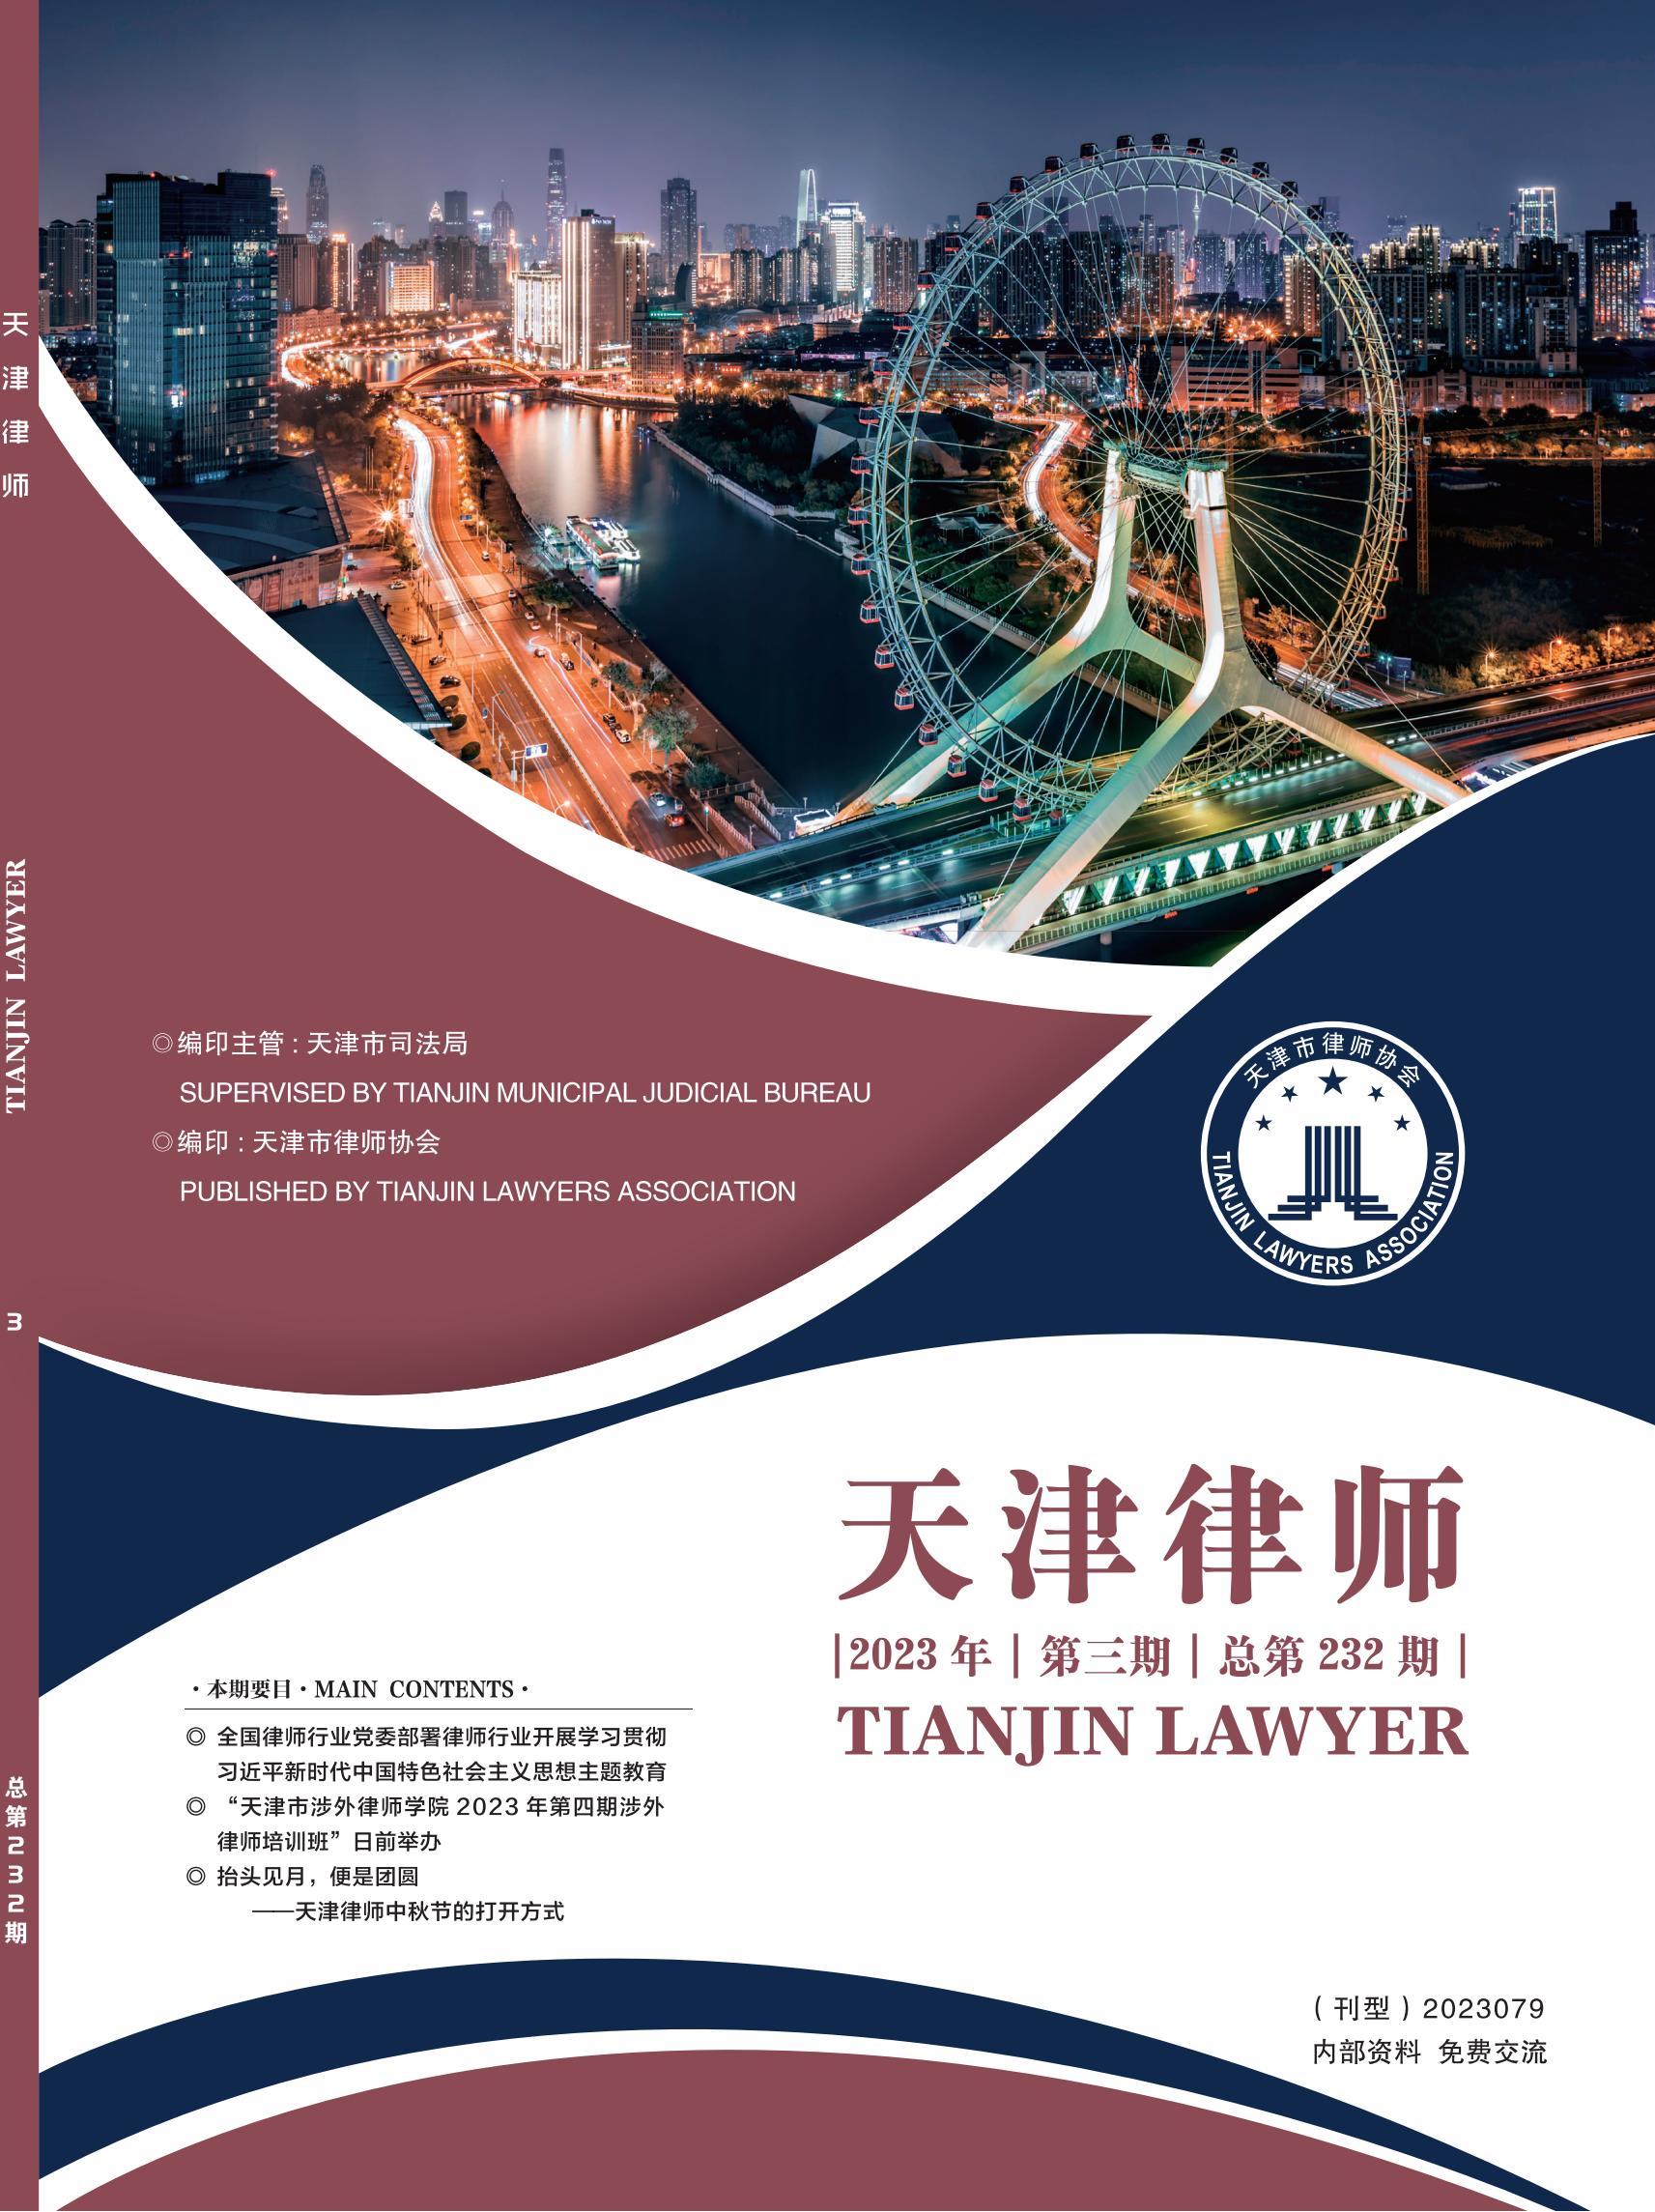 2023年天津律师第三期封面图.jpg